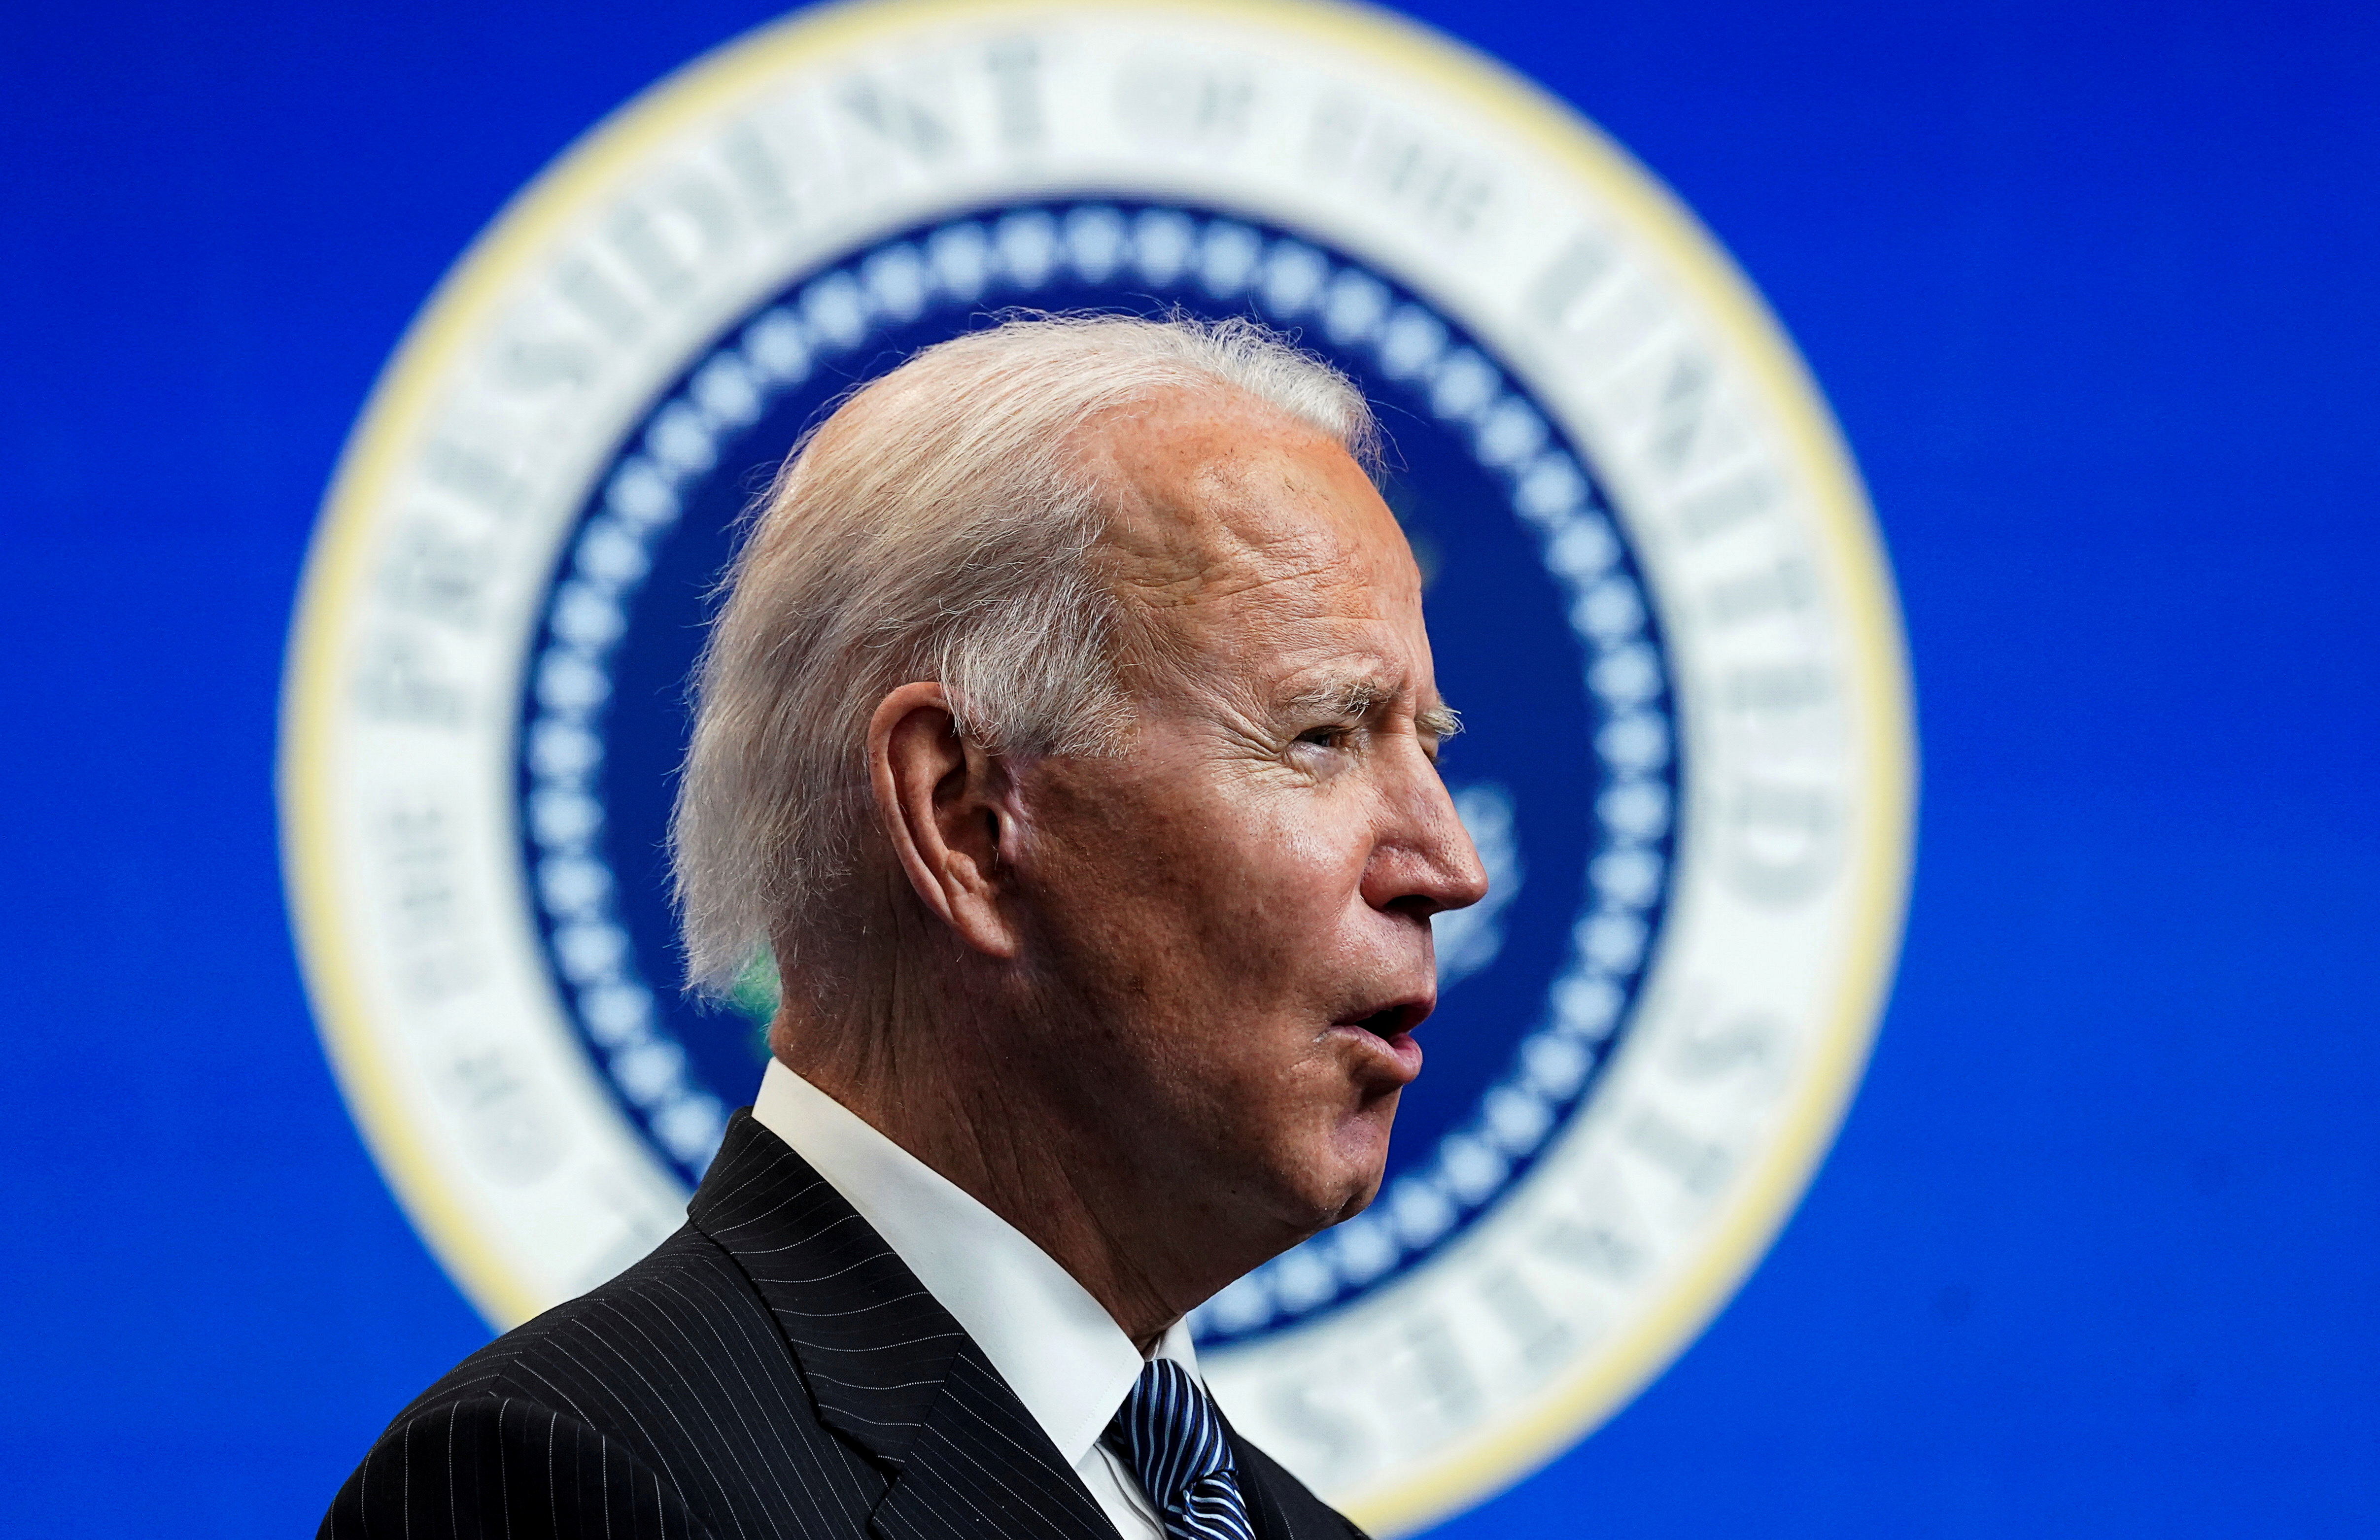 L'obstruction parlementaire, l'un des obstacles majeurs à venir pour Joe Biden ?